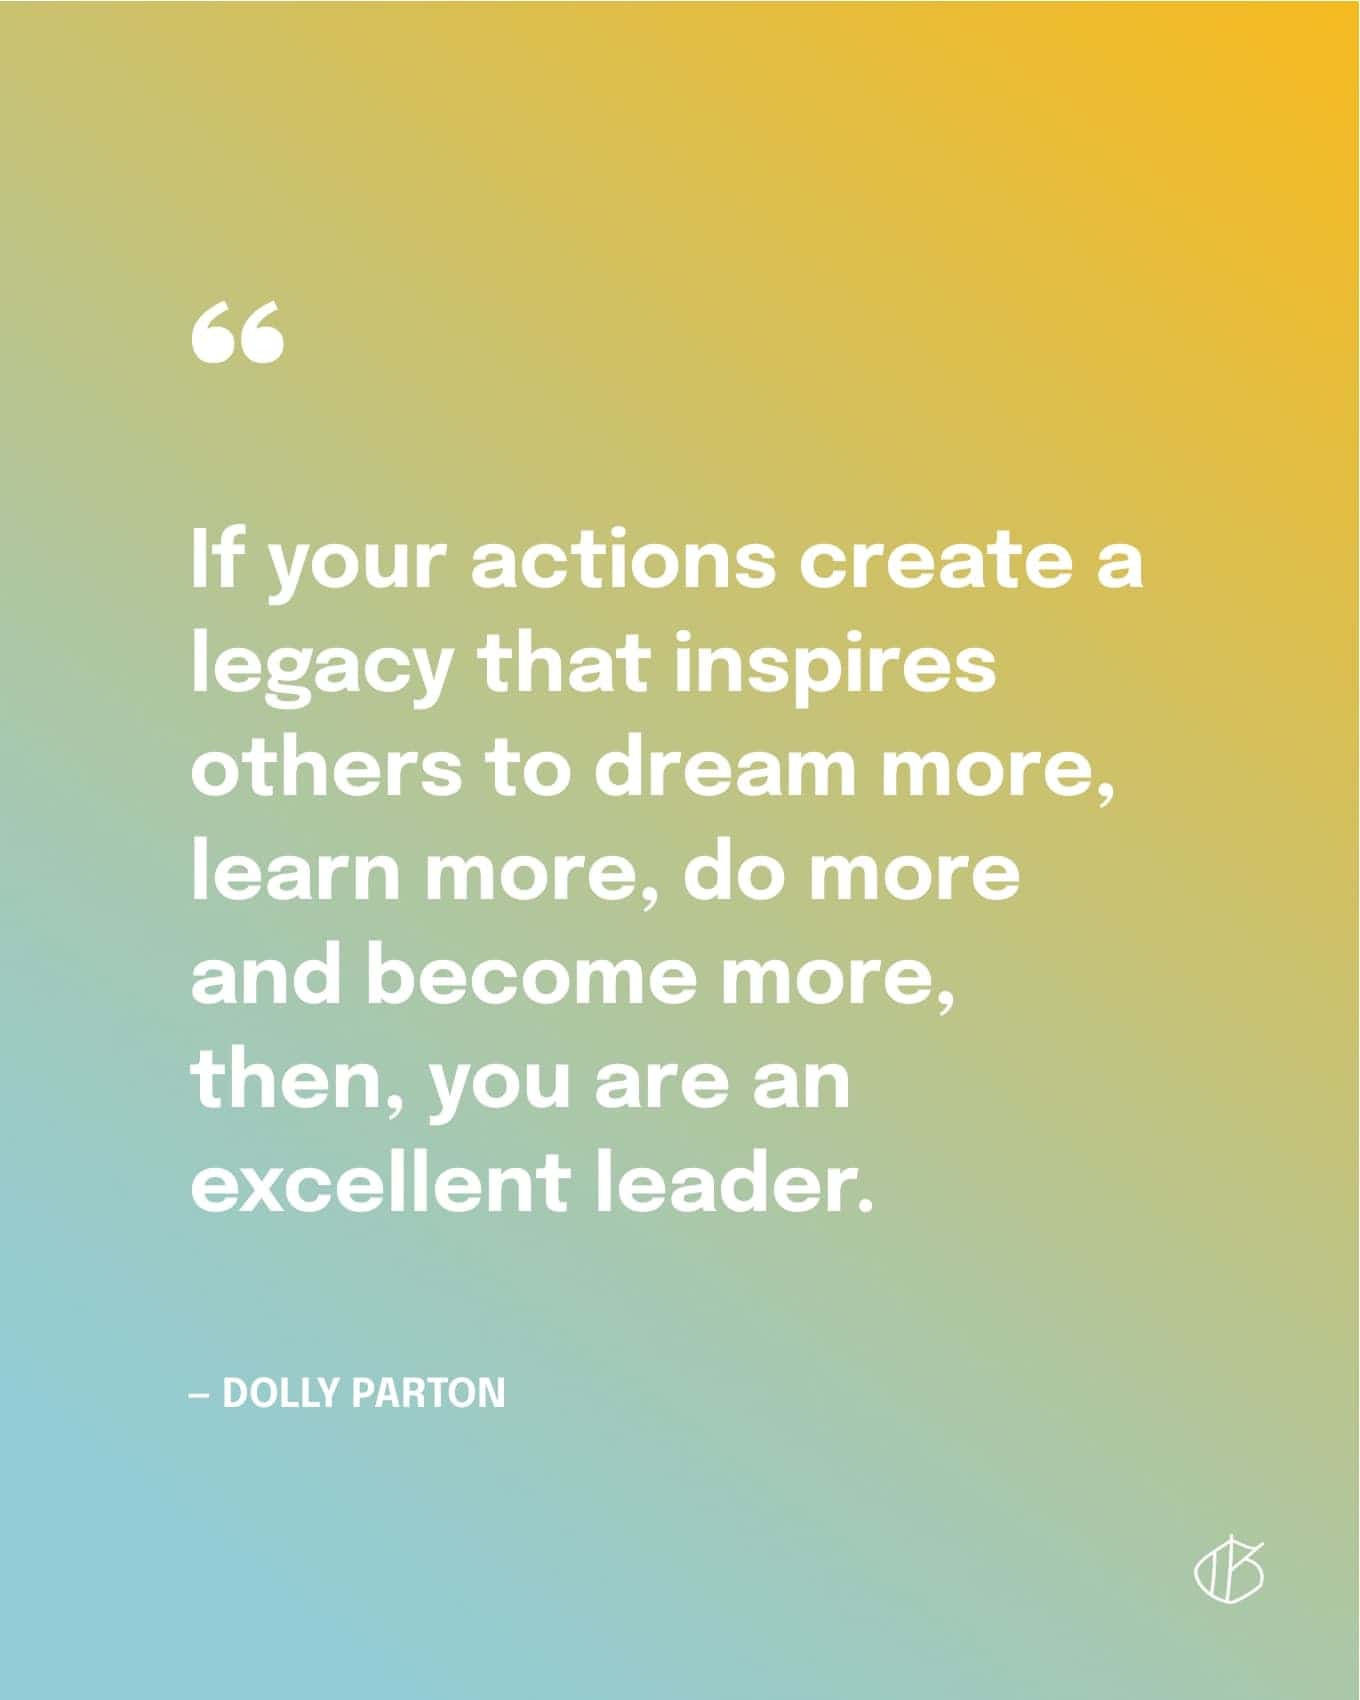 Dolly Parton Quote Wallpaper: Als uw acties een erfenis creëren die anderen inspireert om meer te dromen, meer te leren, meer te doen en meer te worden, dan bent u een uitstekende leider.